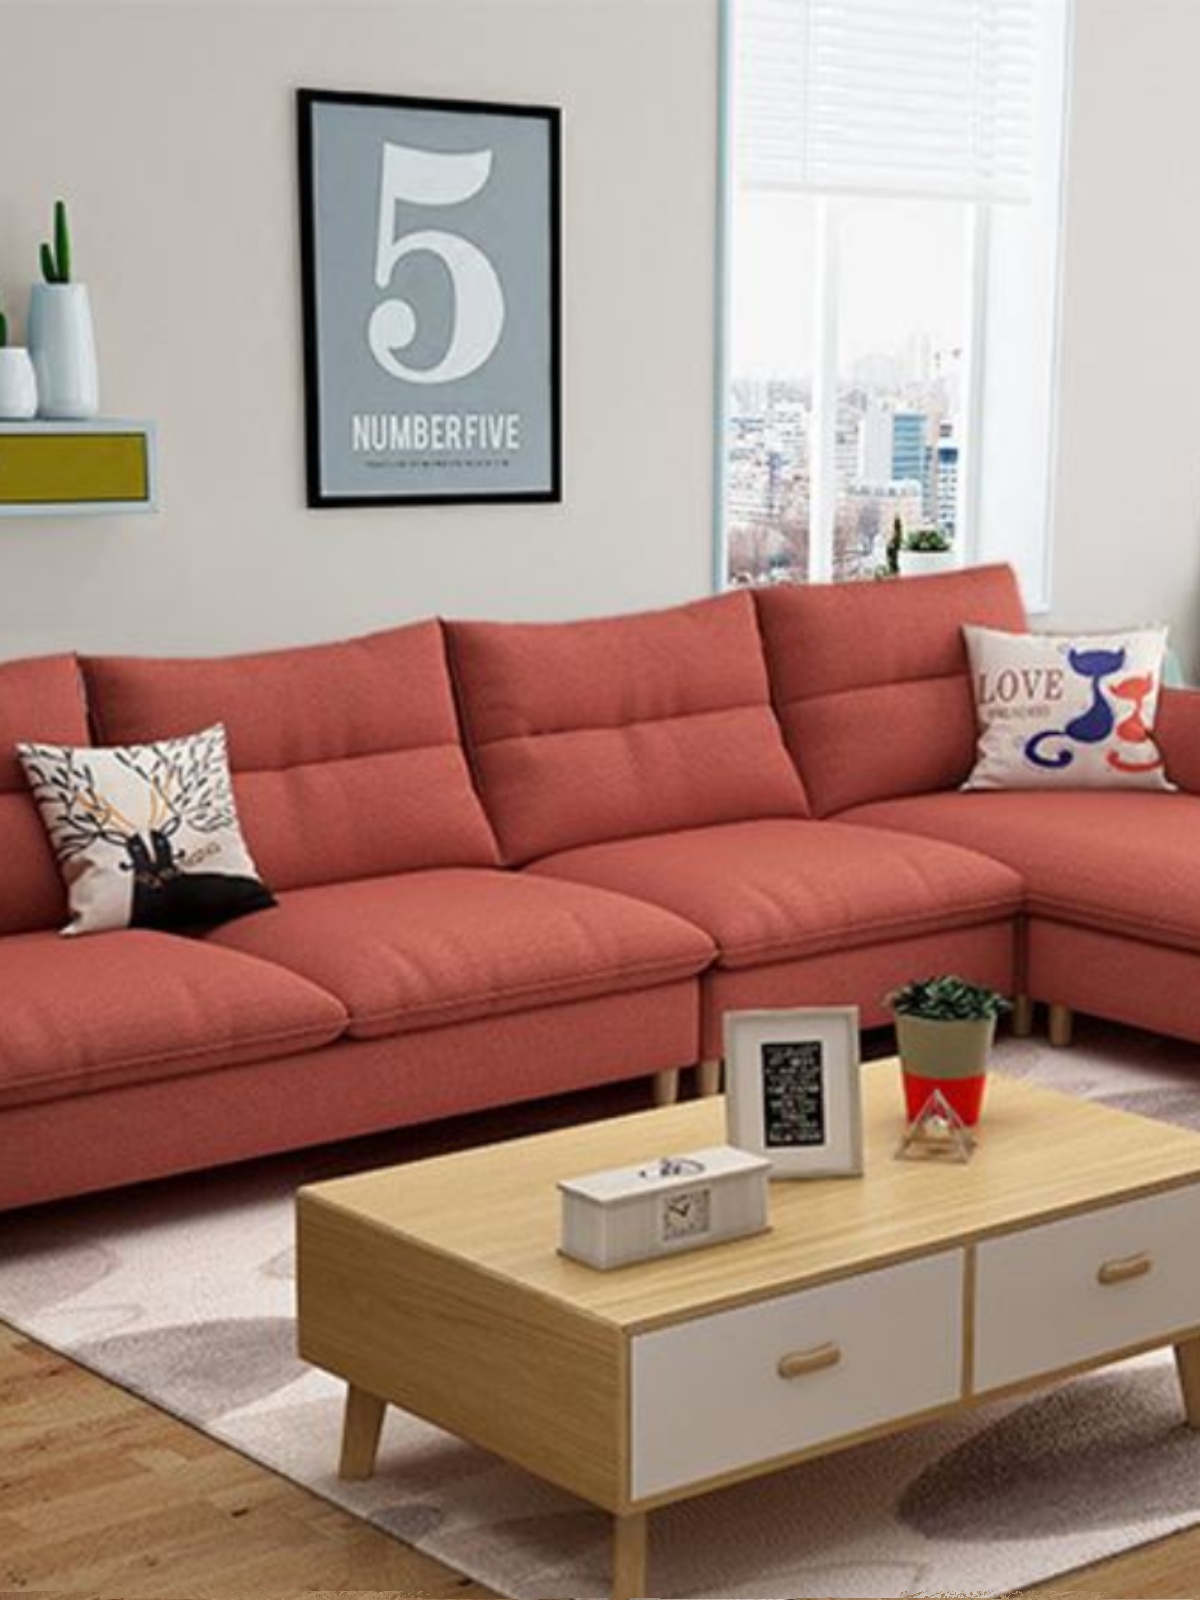 促北欧现代简约中小户型转角布艺拆洗乳胶卧室公寓三人沙发组合新